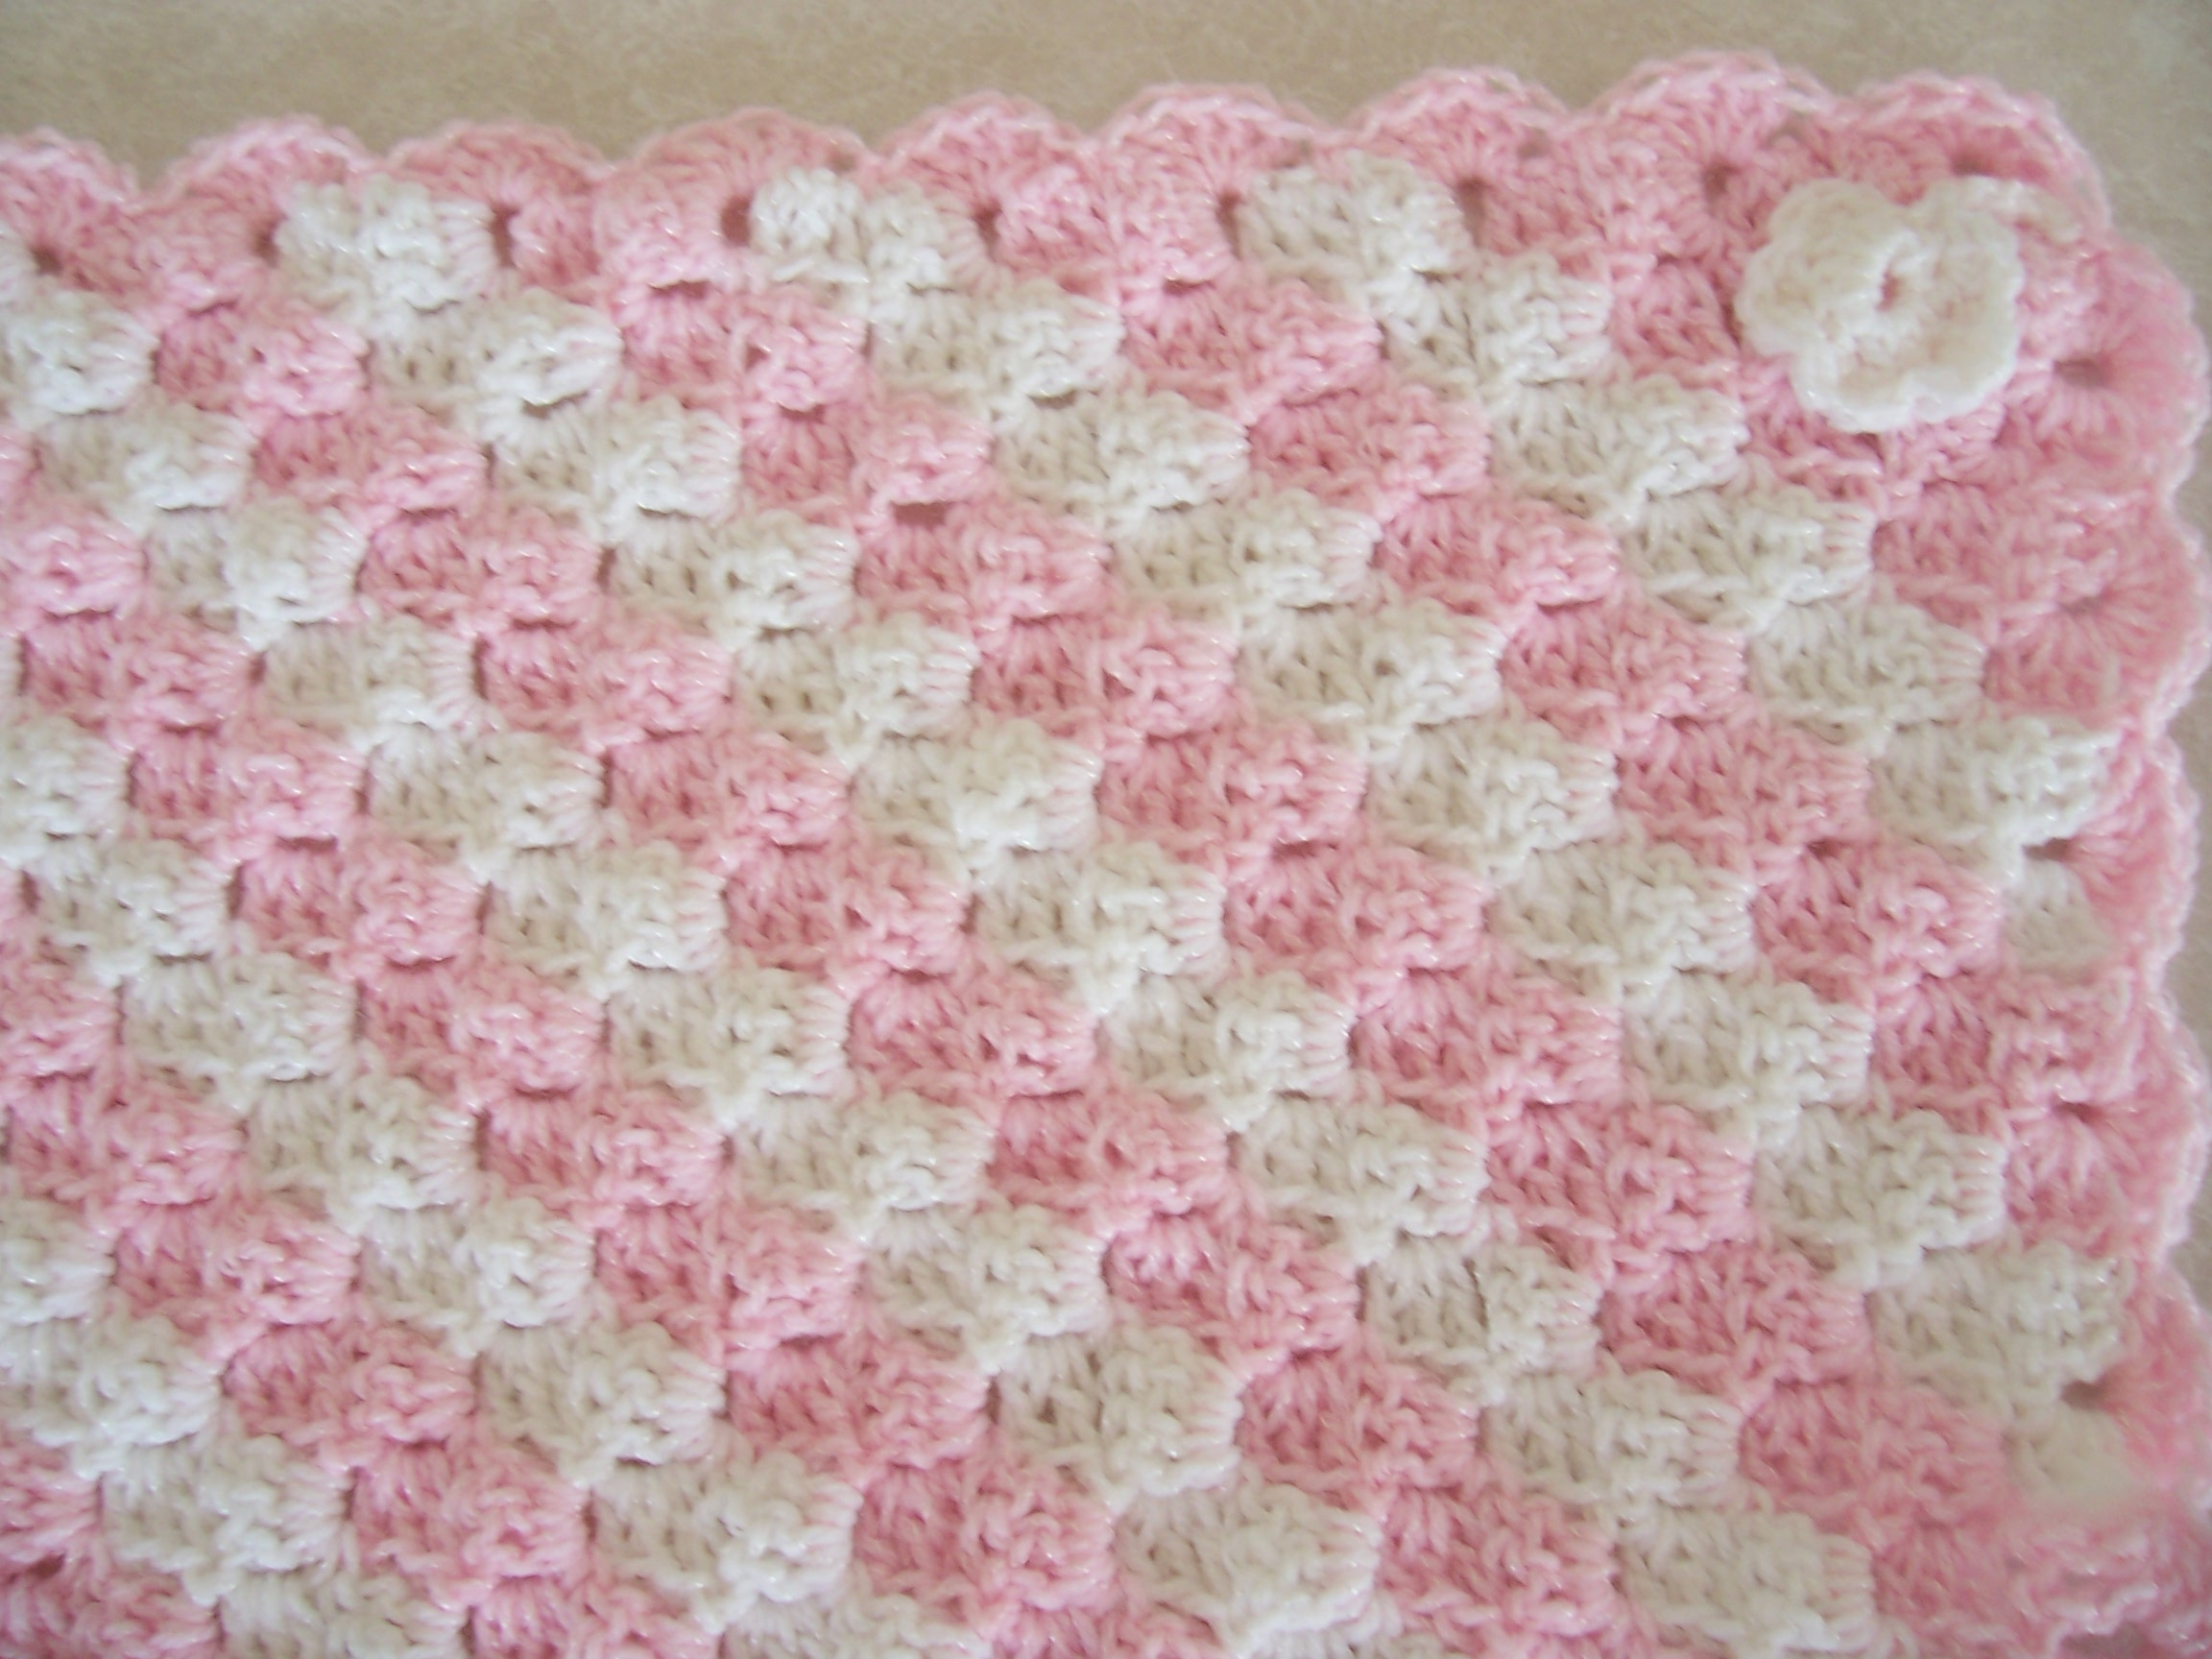 Beginner Crochet Projects Baby Blankets Easy Crochet Ba Blanket Patterns Crochet And Knit